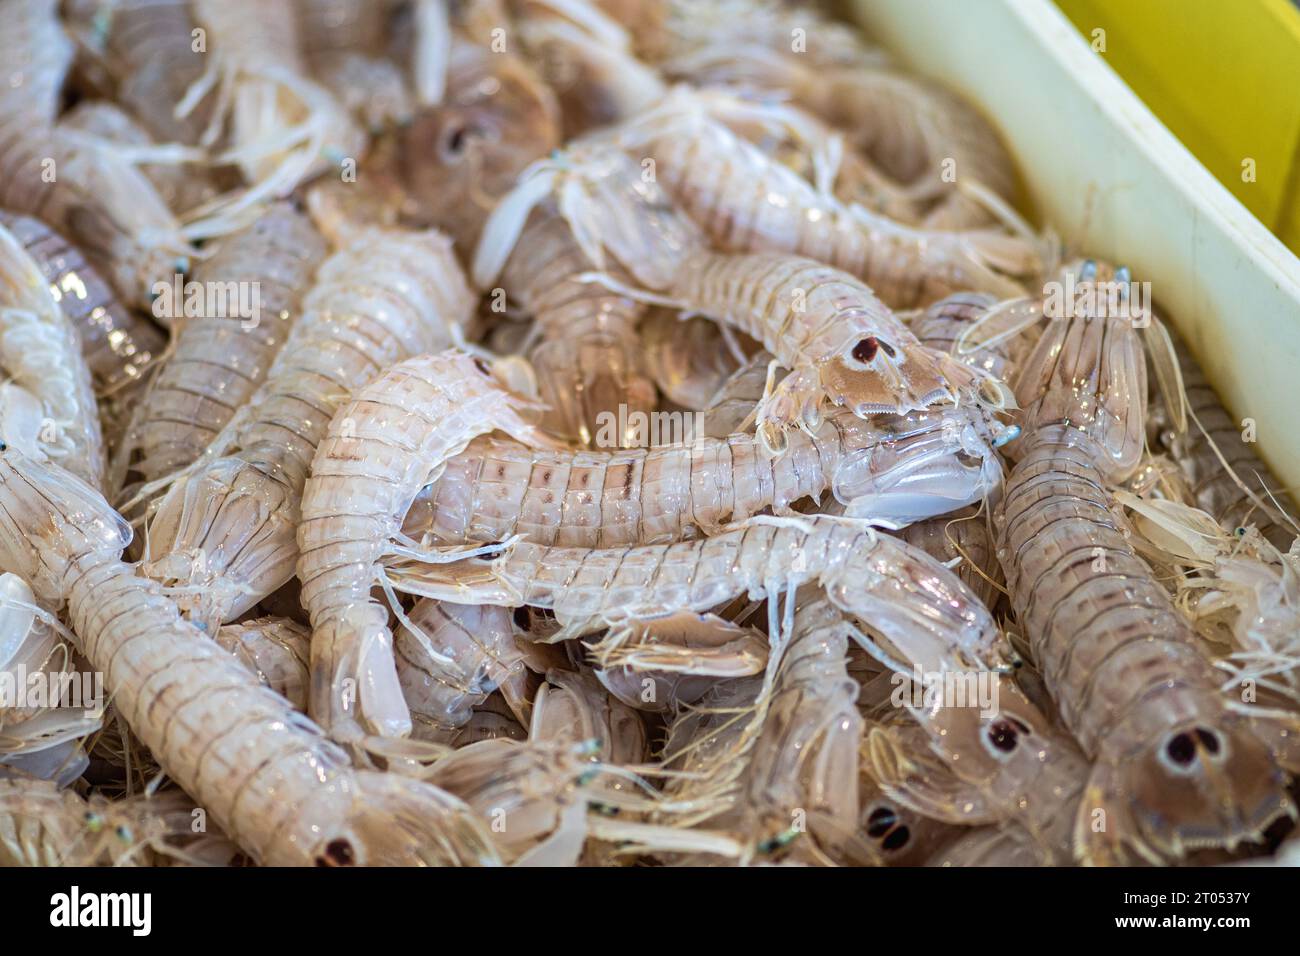 Squilla mantis, espèce de crevette mantis présente dans les zones côtières peu profondes de la mer Méditerranée et de l'océan Atlantique est : cicala ou pacchero Banque D'Images